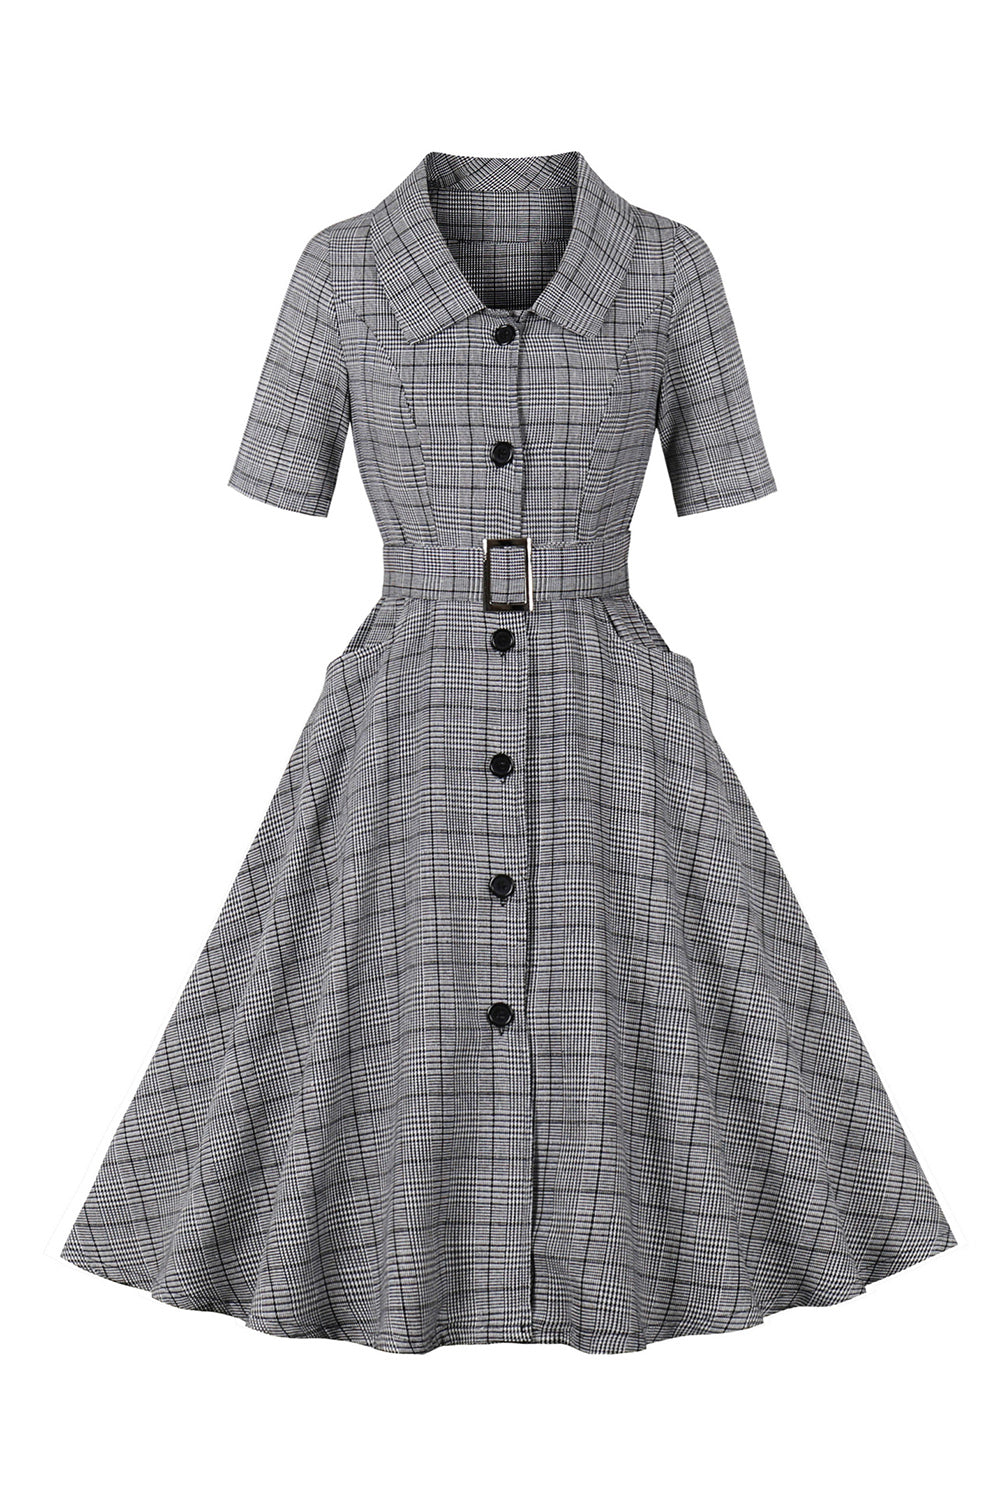 A-Line 3/4 ærmer grå 1950'er kjole med lommer